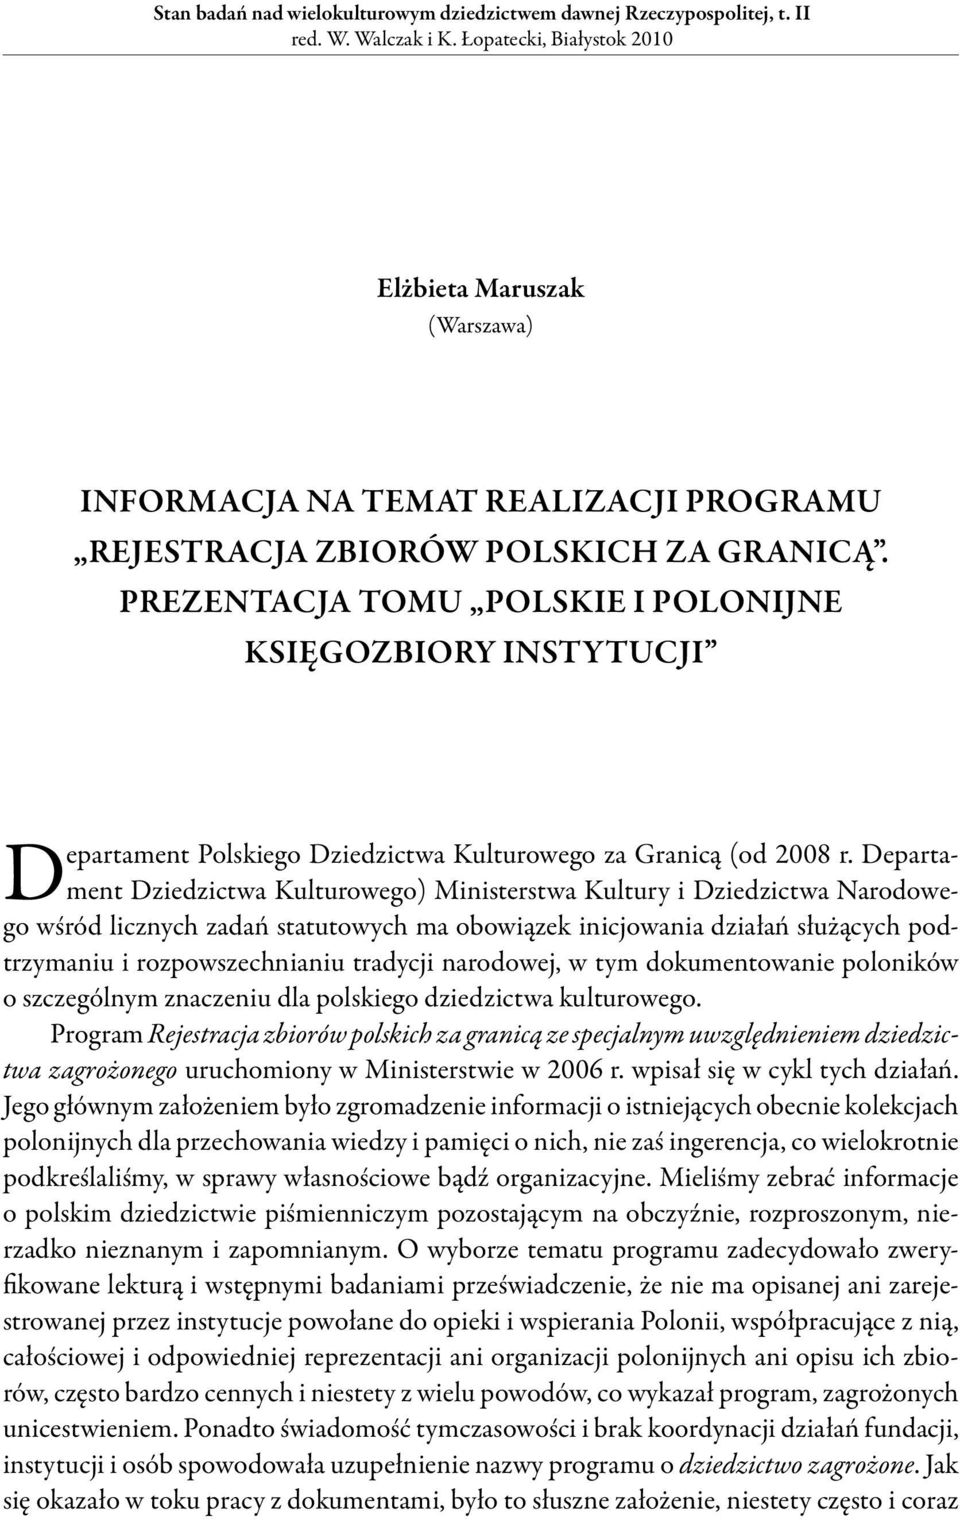 Prezentacja tomu Polskie i polonijne księgozbiory instytucji Departament Polskiego Dziedzictwa Kulturowego za Granicą (od 2008 r.